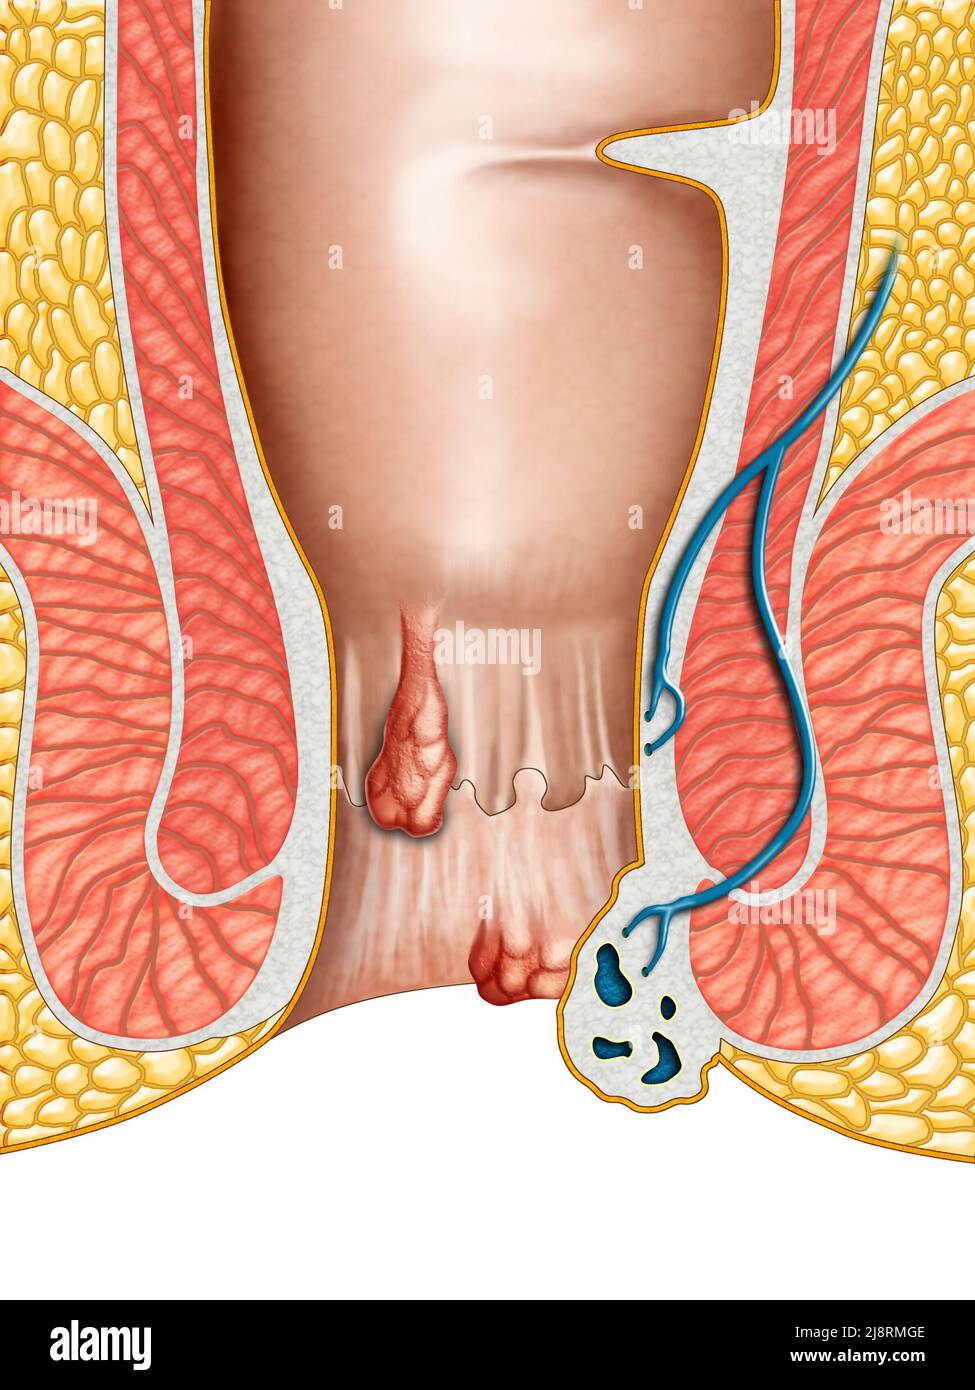 Dessin anatomique montrant les hémorroïdes internes et externes. Illustration numérique. Banque D'Images